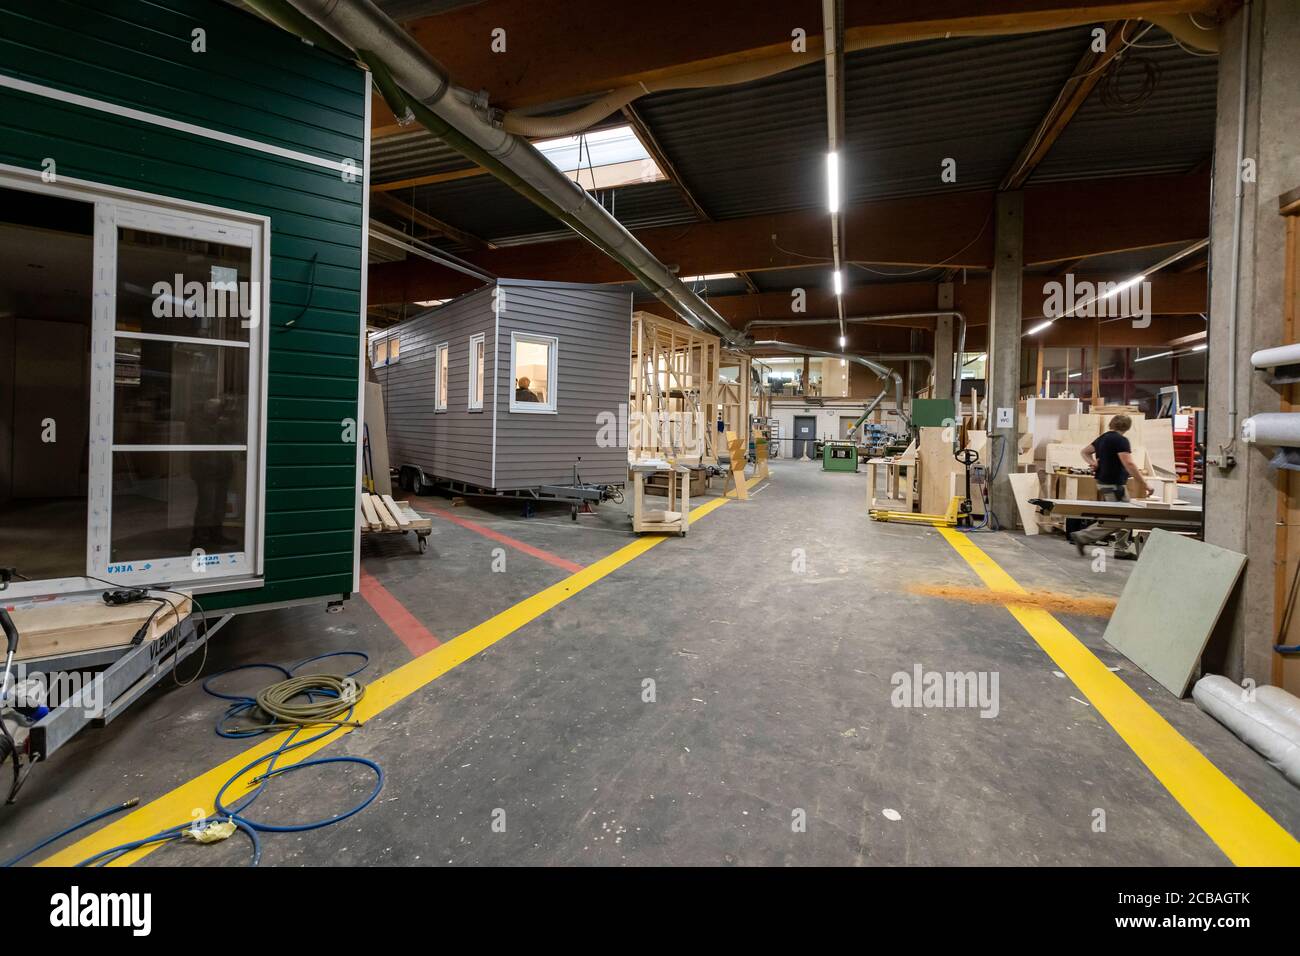 De petites maisons ont été construites dans l'atelier de menuiserie de Stefan Diekmann à Hamm-Bockum-Hövel depuis 2015, lorsque le boom dans les mini maisons a commencé. Différents modèles sont fabriqués par les 40 employés. La société Diekmann est leader du marché. Banque D'Images